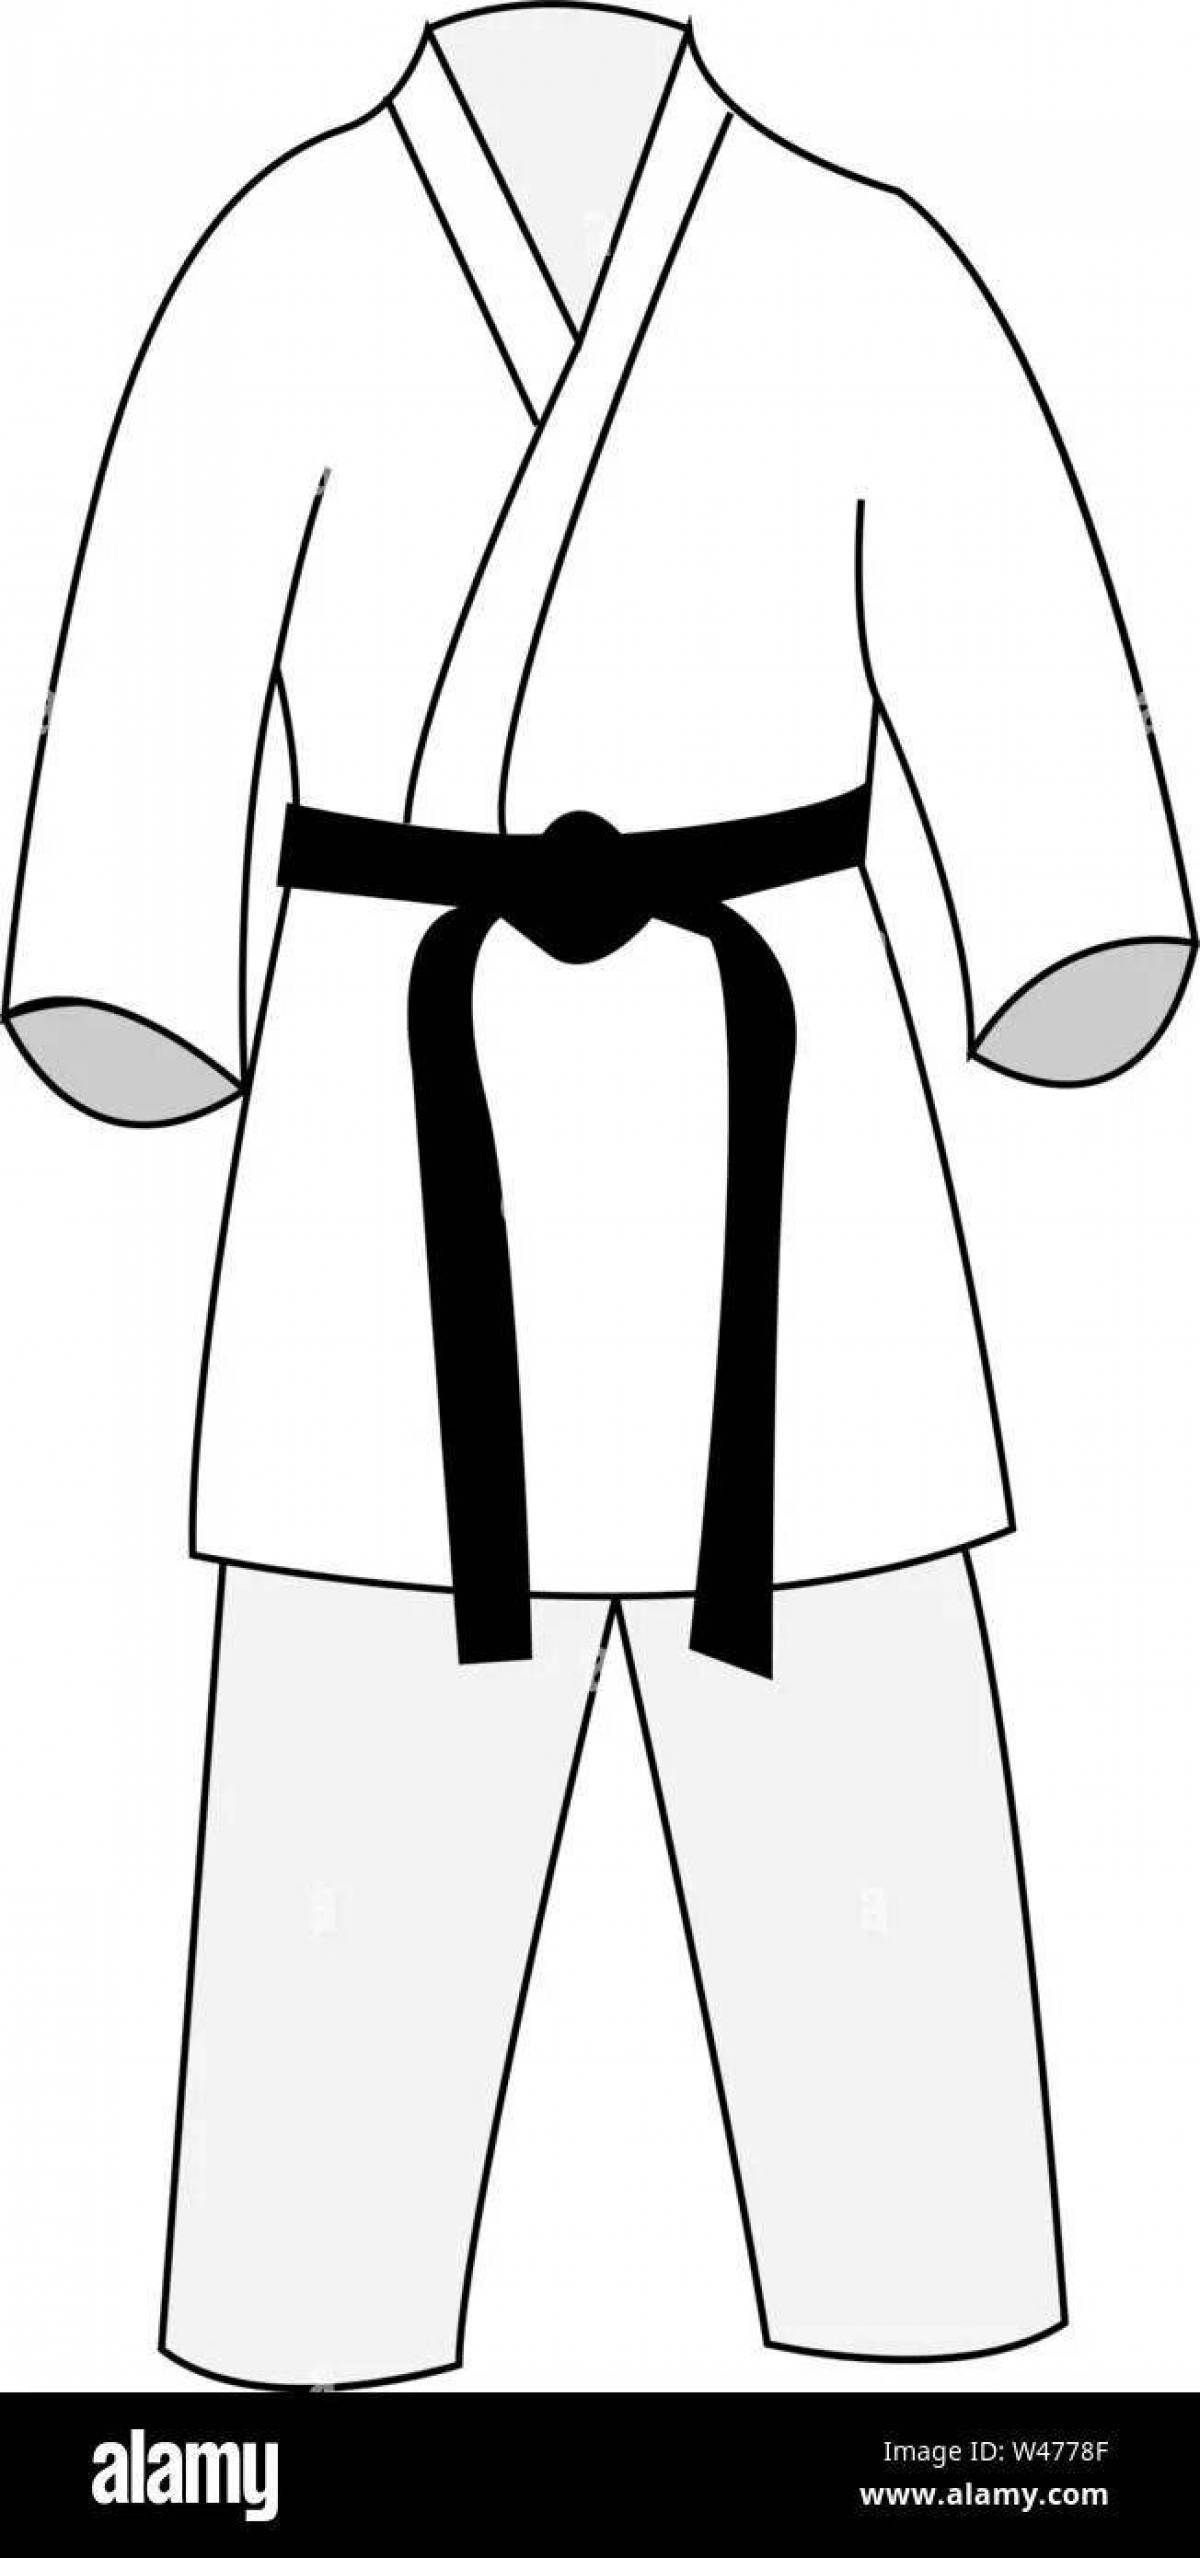 Раскраска стильное дзюдо-кимоно